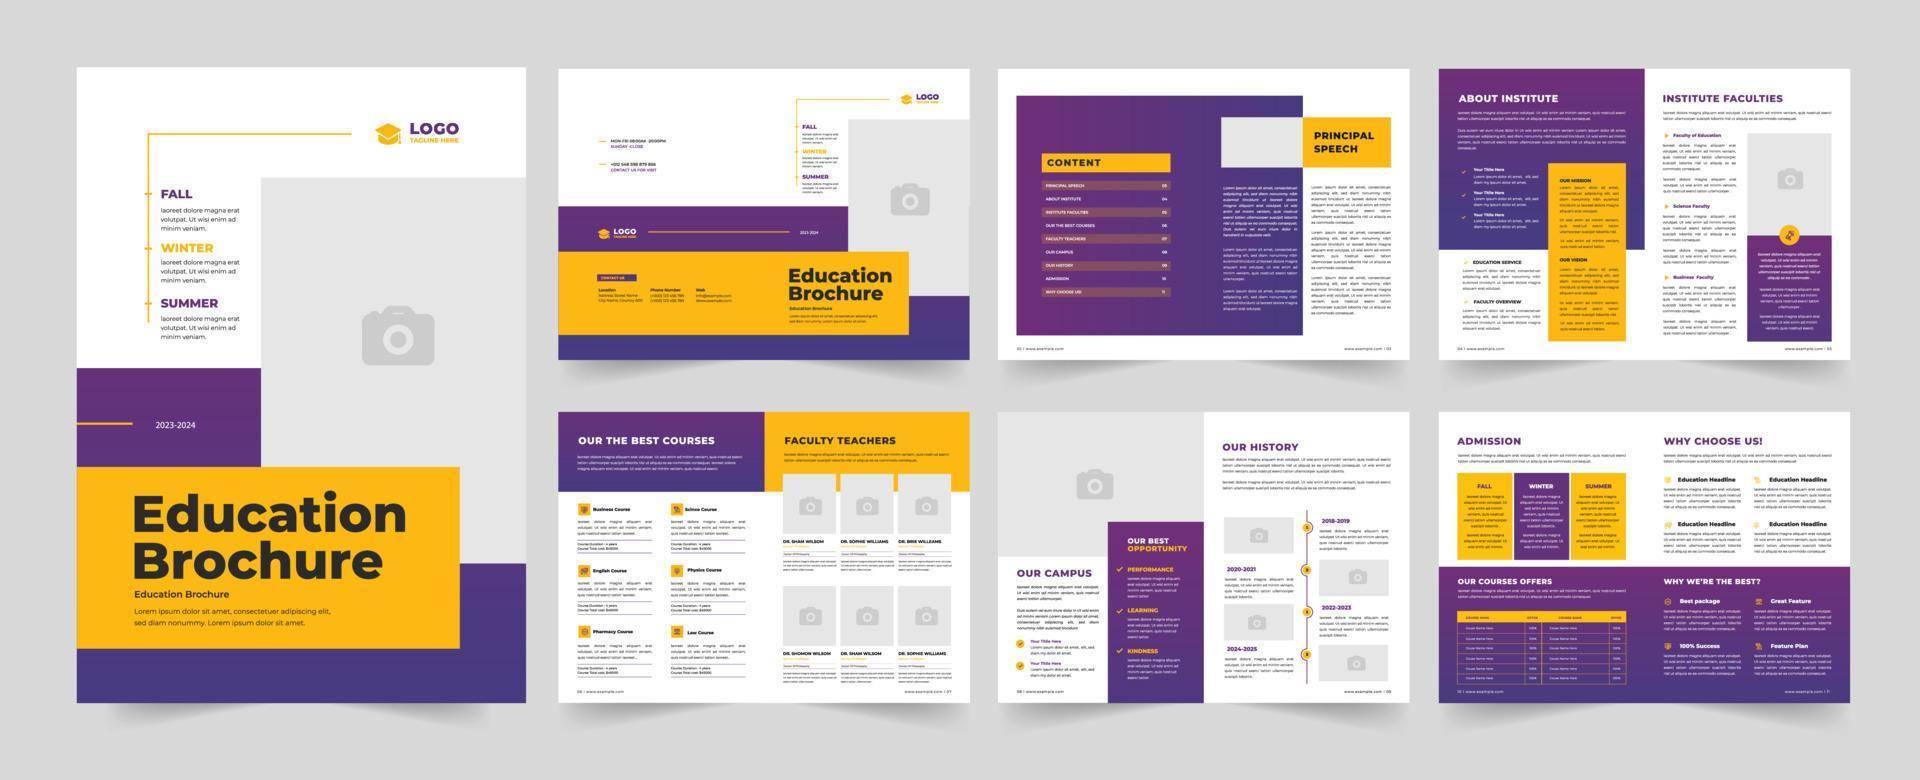 utbildning broschyr mall design vektor